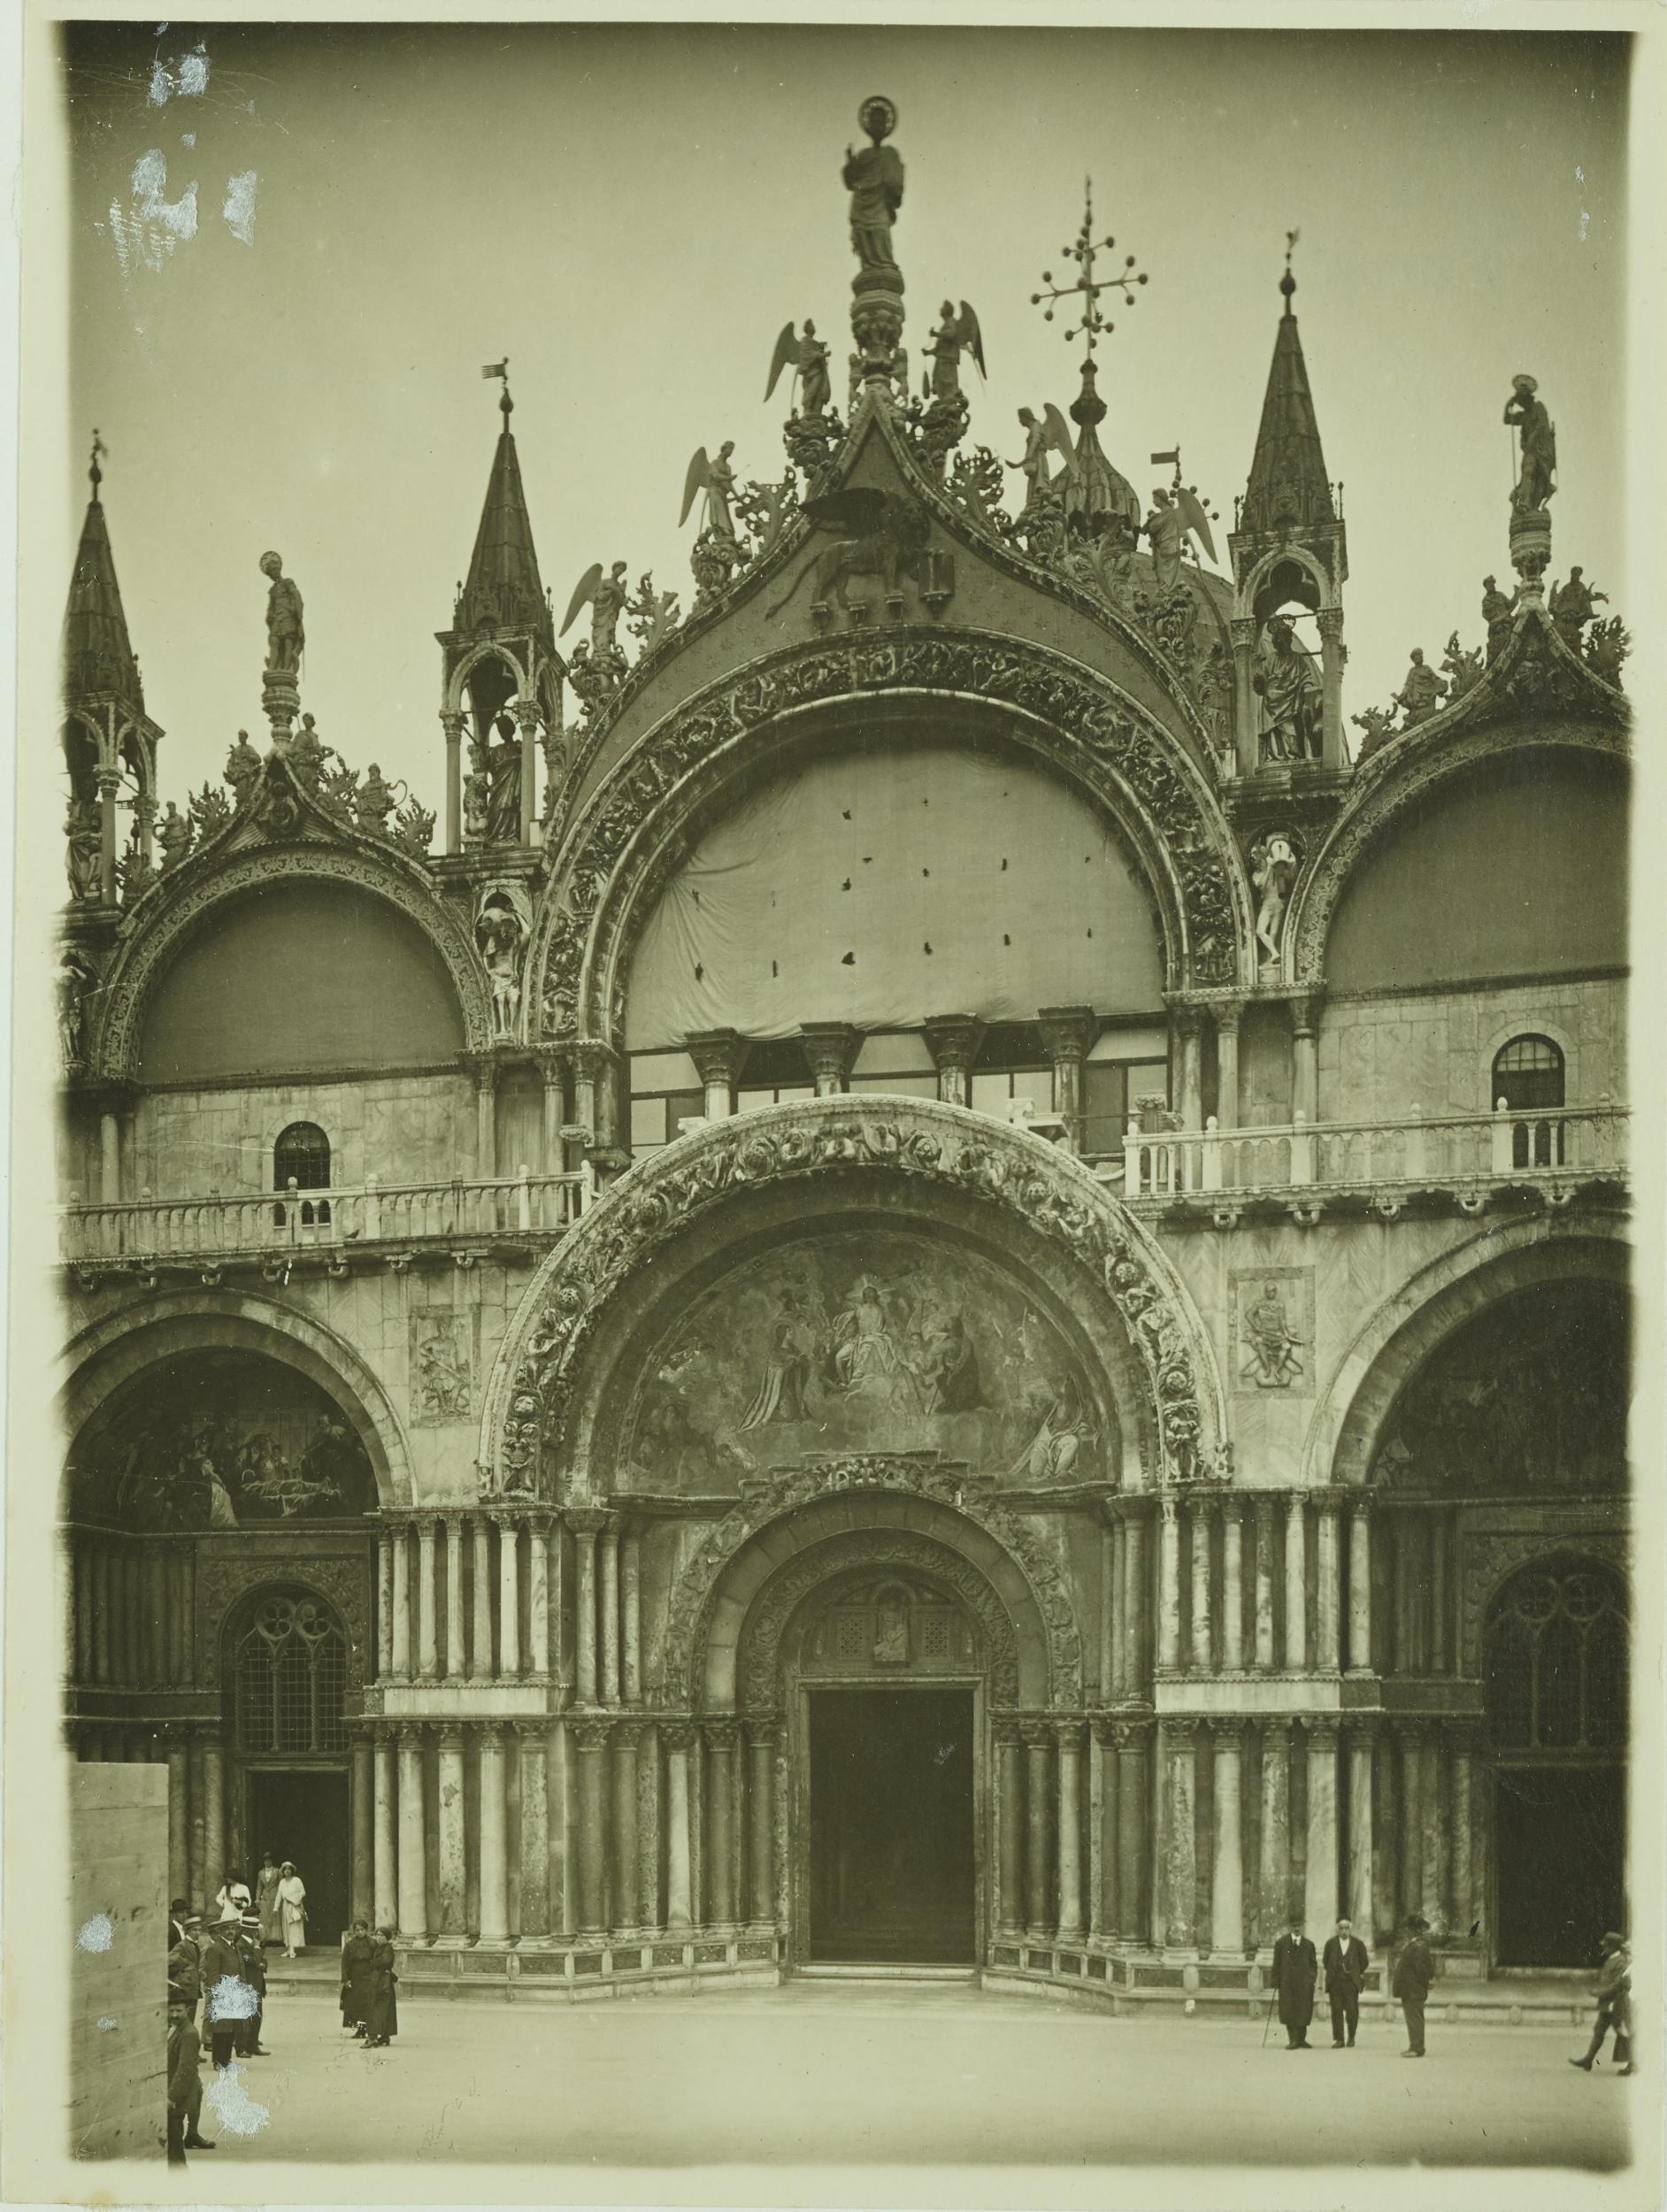 Fotografo non identificato, Venezia - Basilica di S. Marco, facciata, senza cavalli, gelatina ai sali d'argento, MPI153202